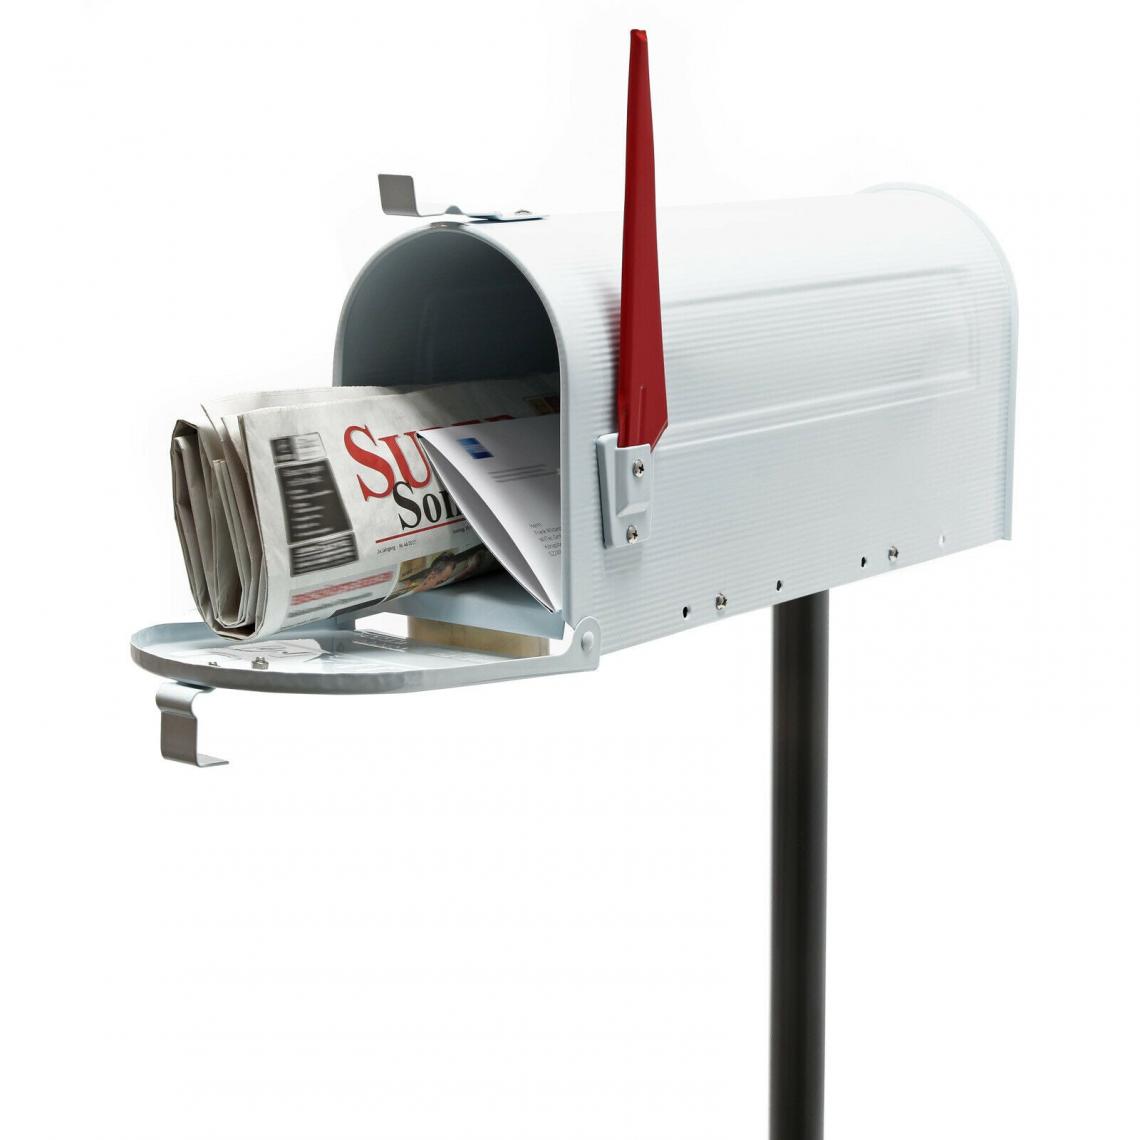 Helloshop26 - Us mailbox boite aux lettres design américain argent pied de support courrier 16_0000330 - Boîte aux lettres